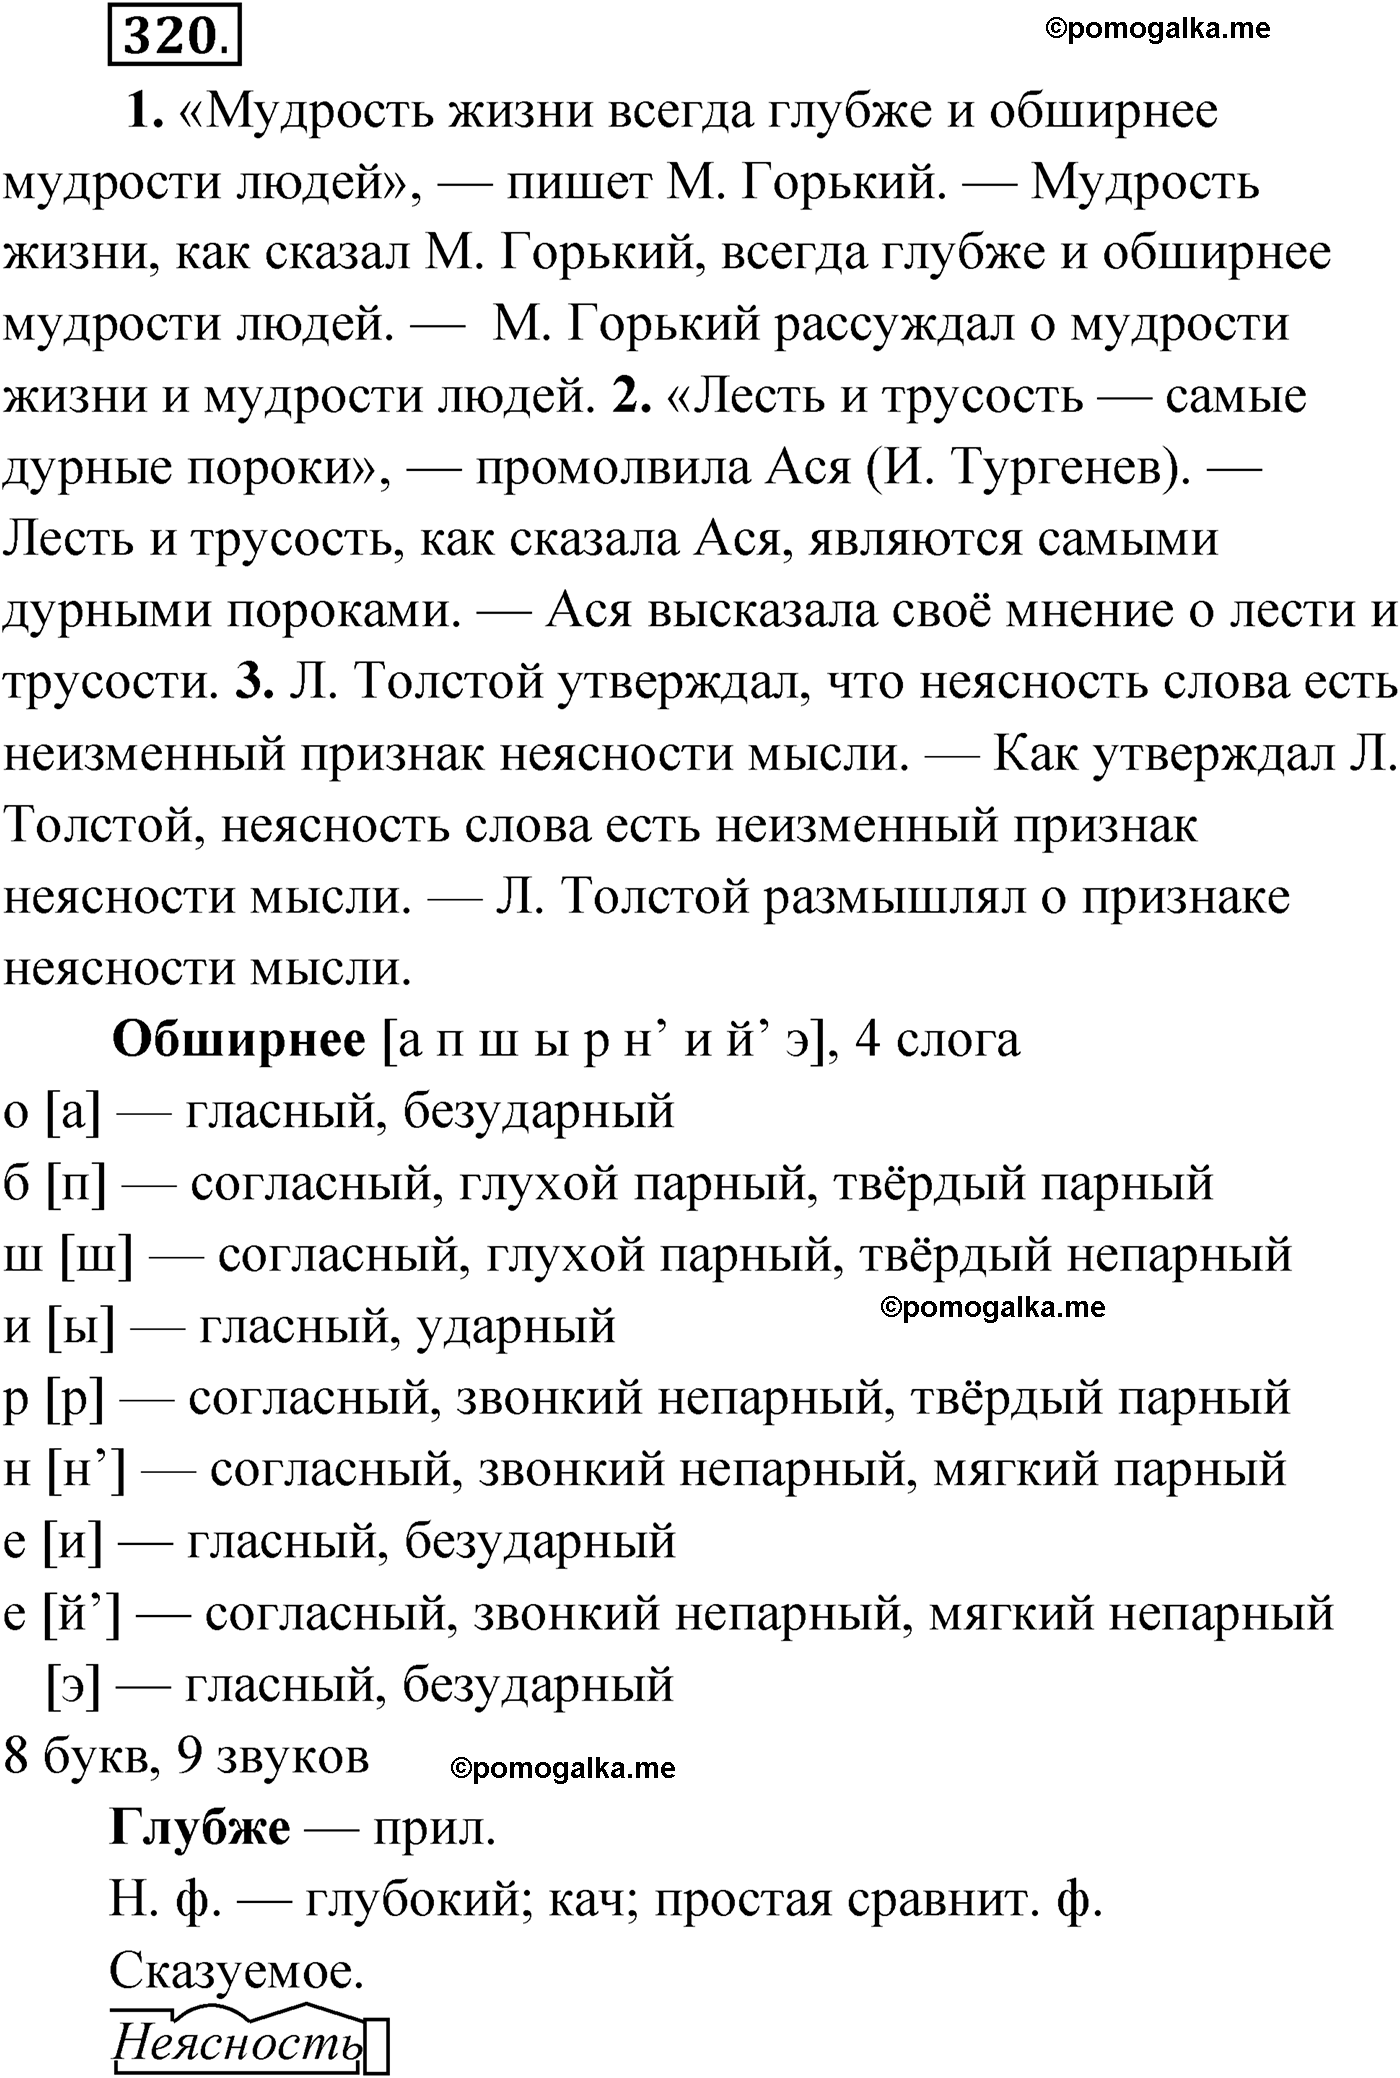 упражнение №320 русский язык 9 класс Мурина 2019 год